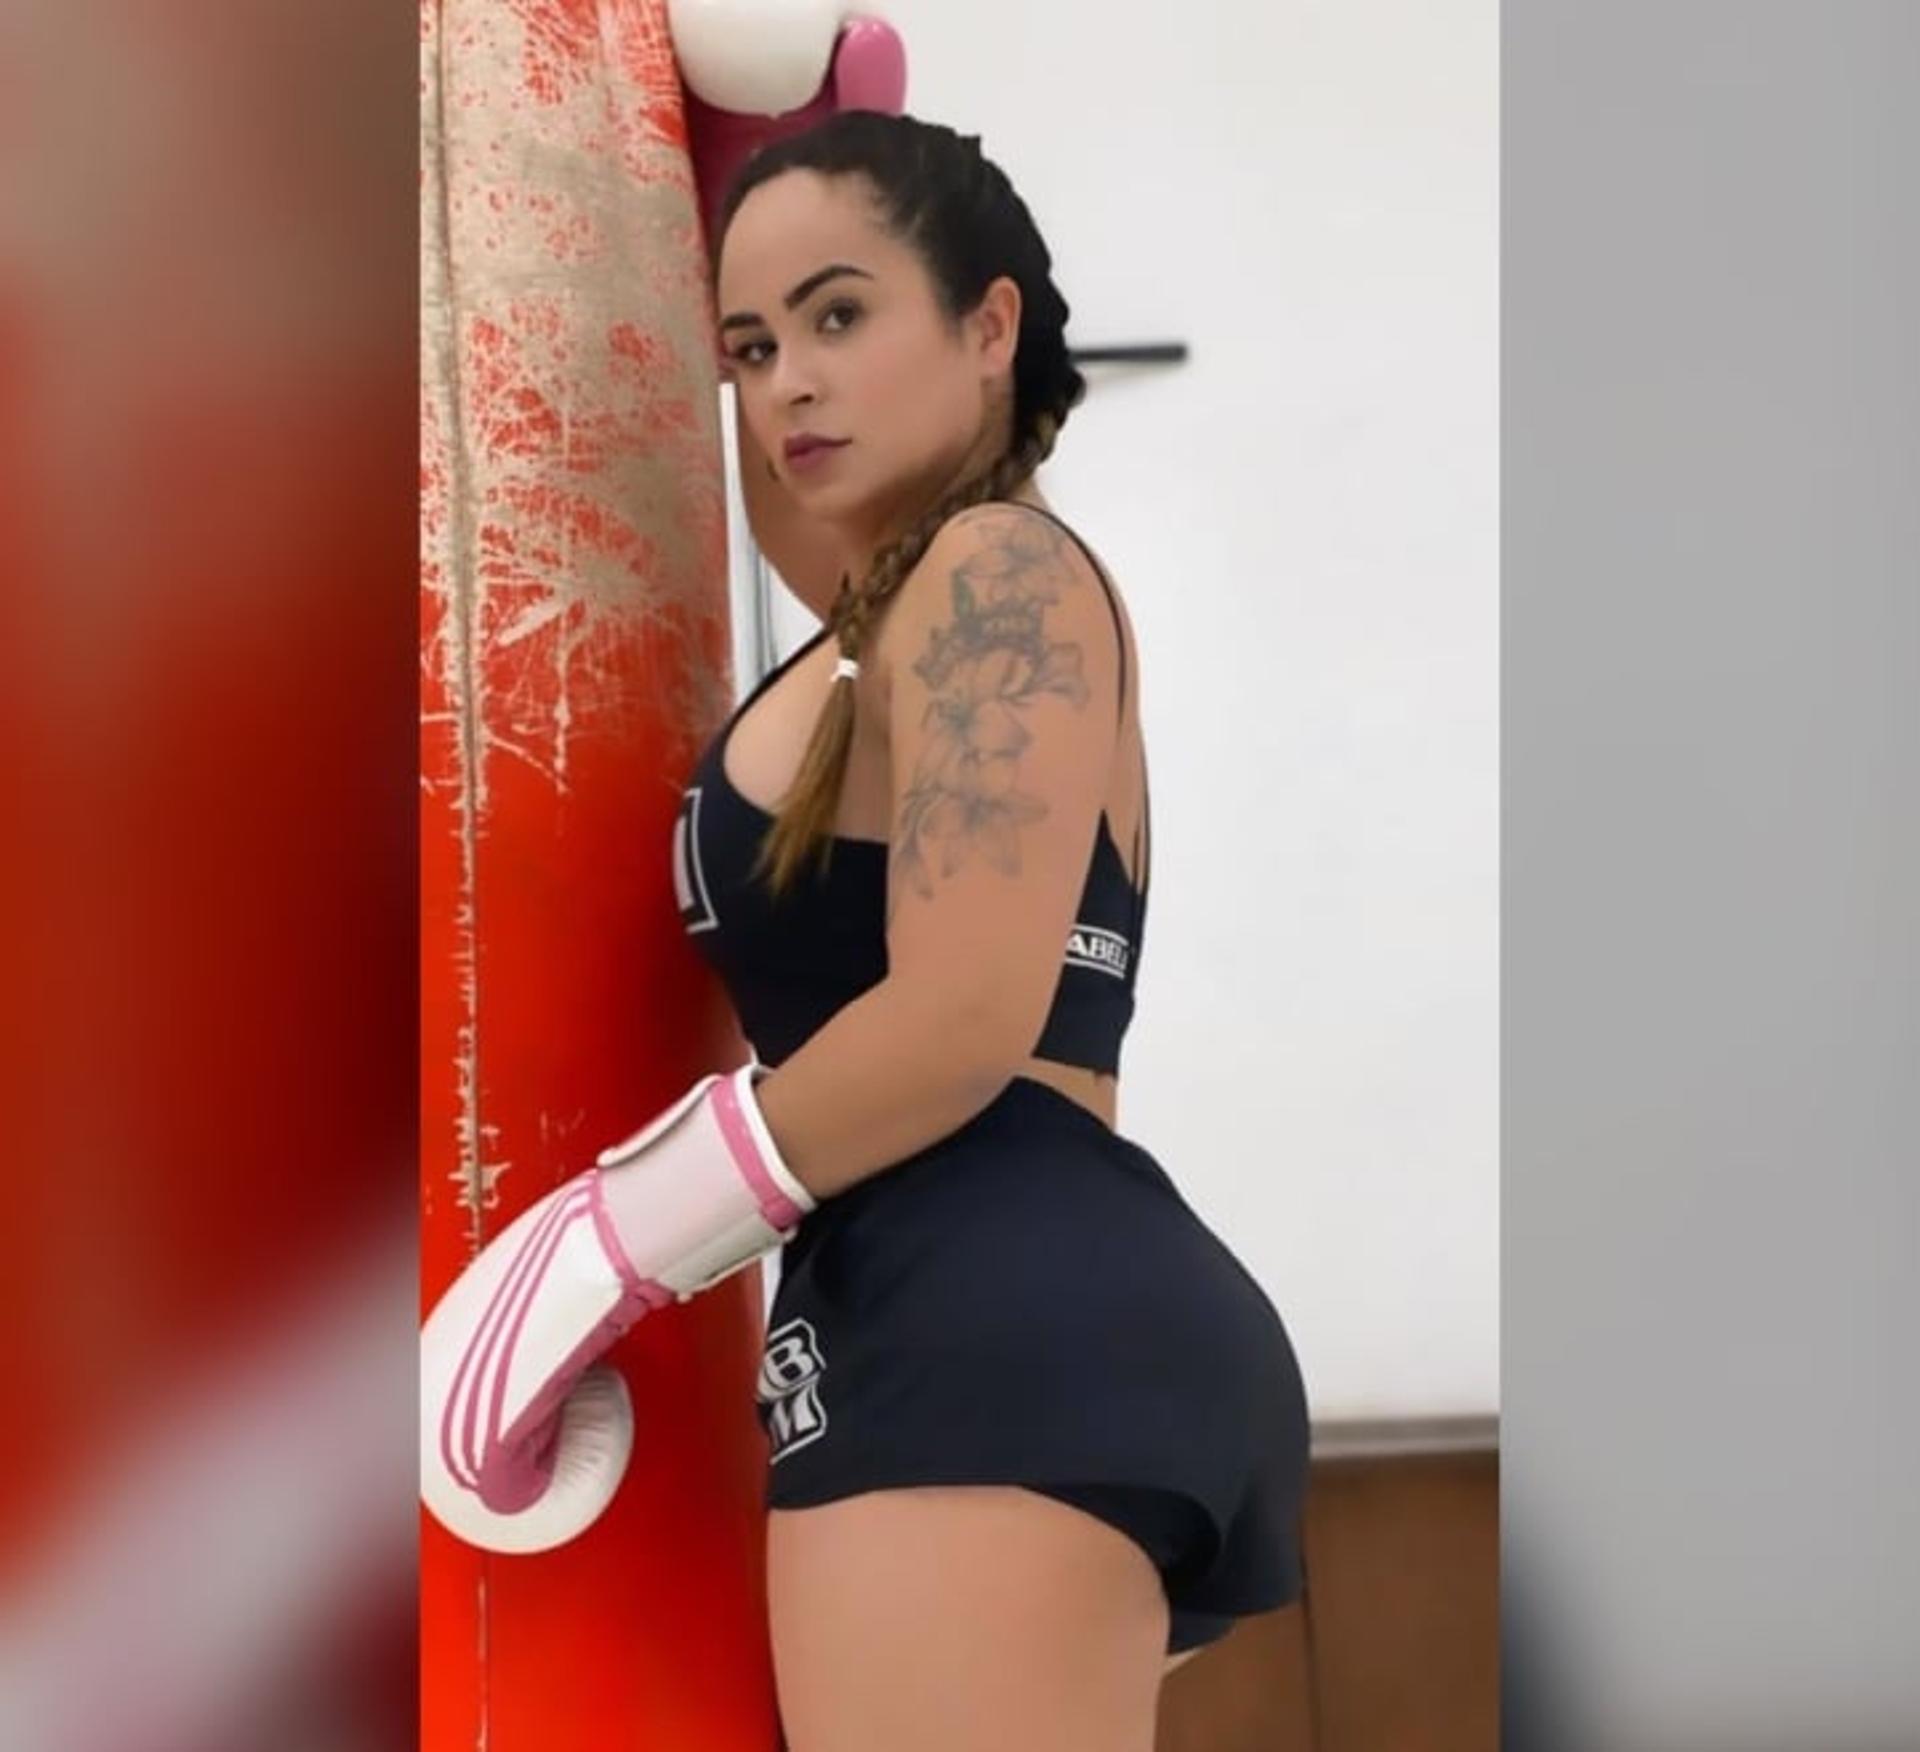 Sucesso nas redes por tornear o bumbum de famosas, influencer Natasha Ramos aponta o Muay Thai como atividade essencial